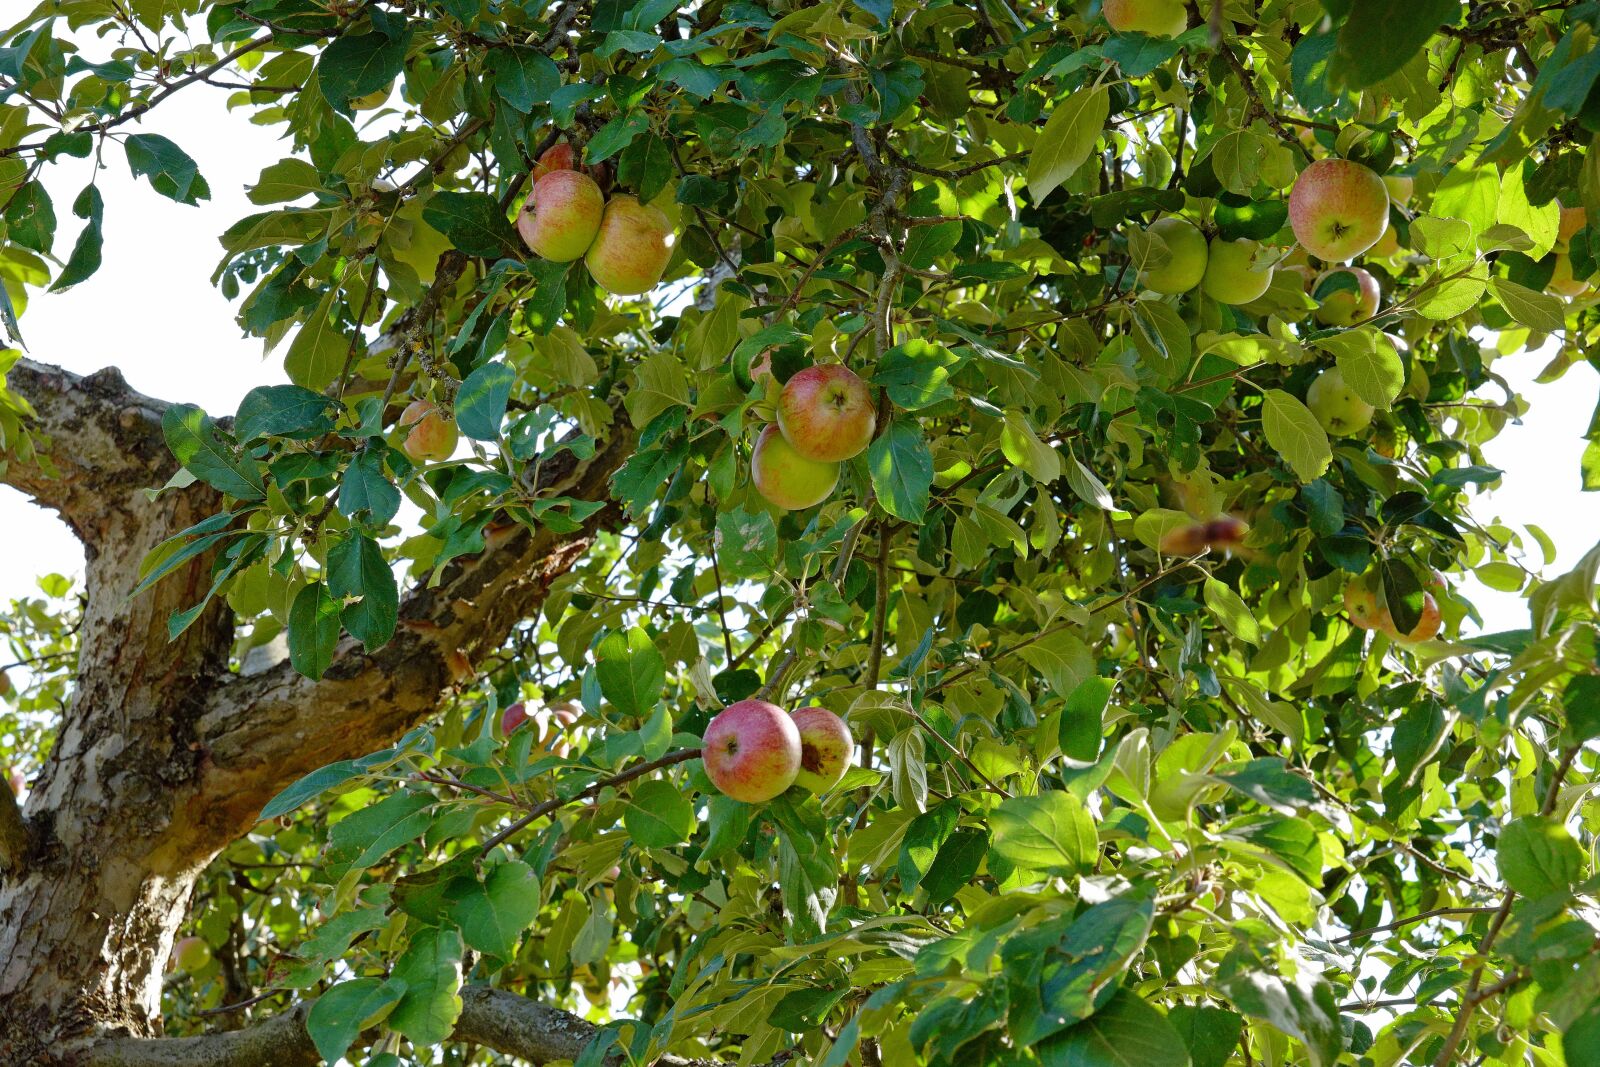 Vario-Elmar TL 1:3.5-5.6 / 18-56 ASPH. sample photo. Apple tree, apple, tree photography